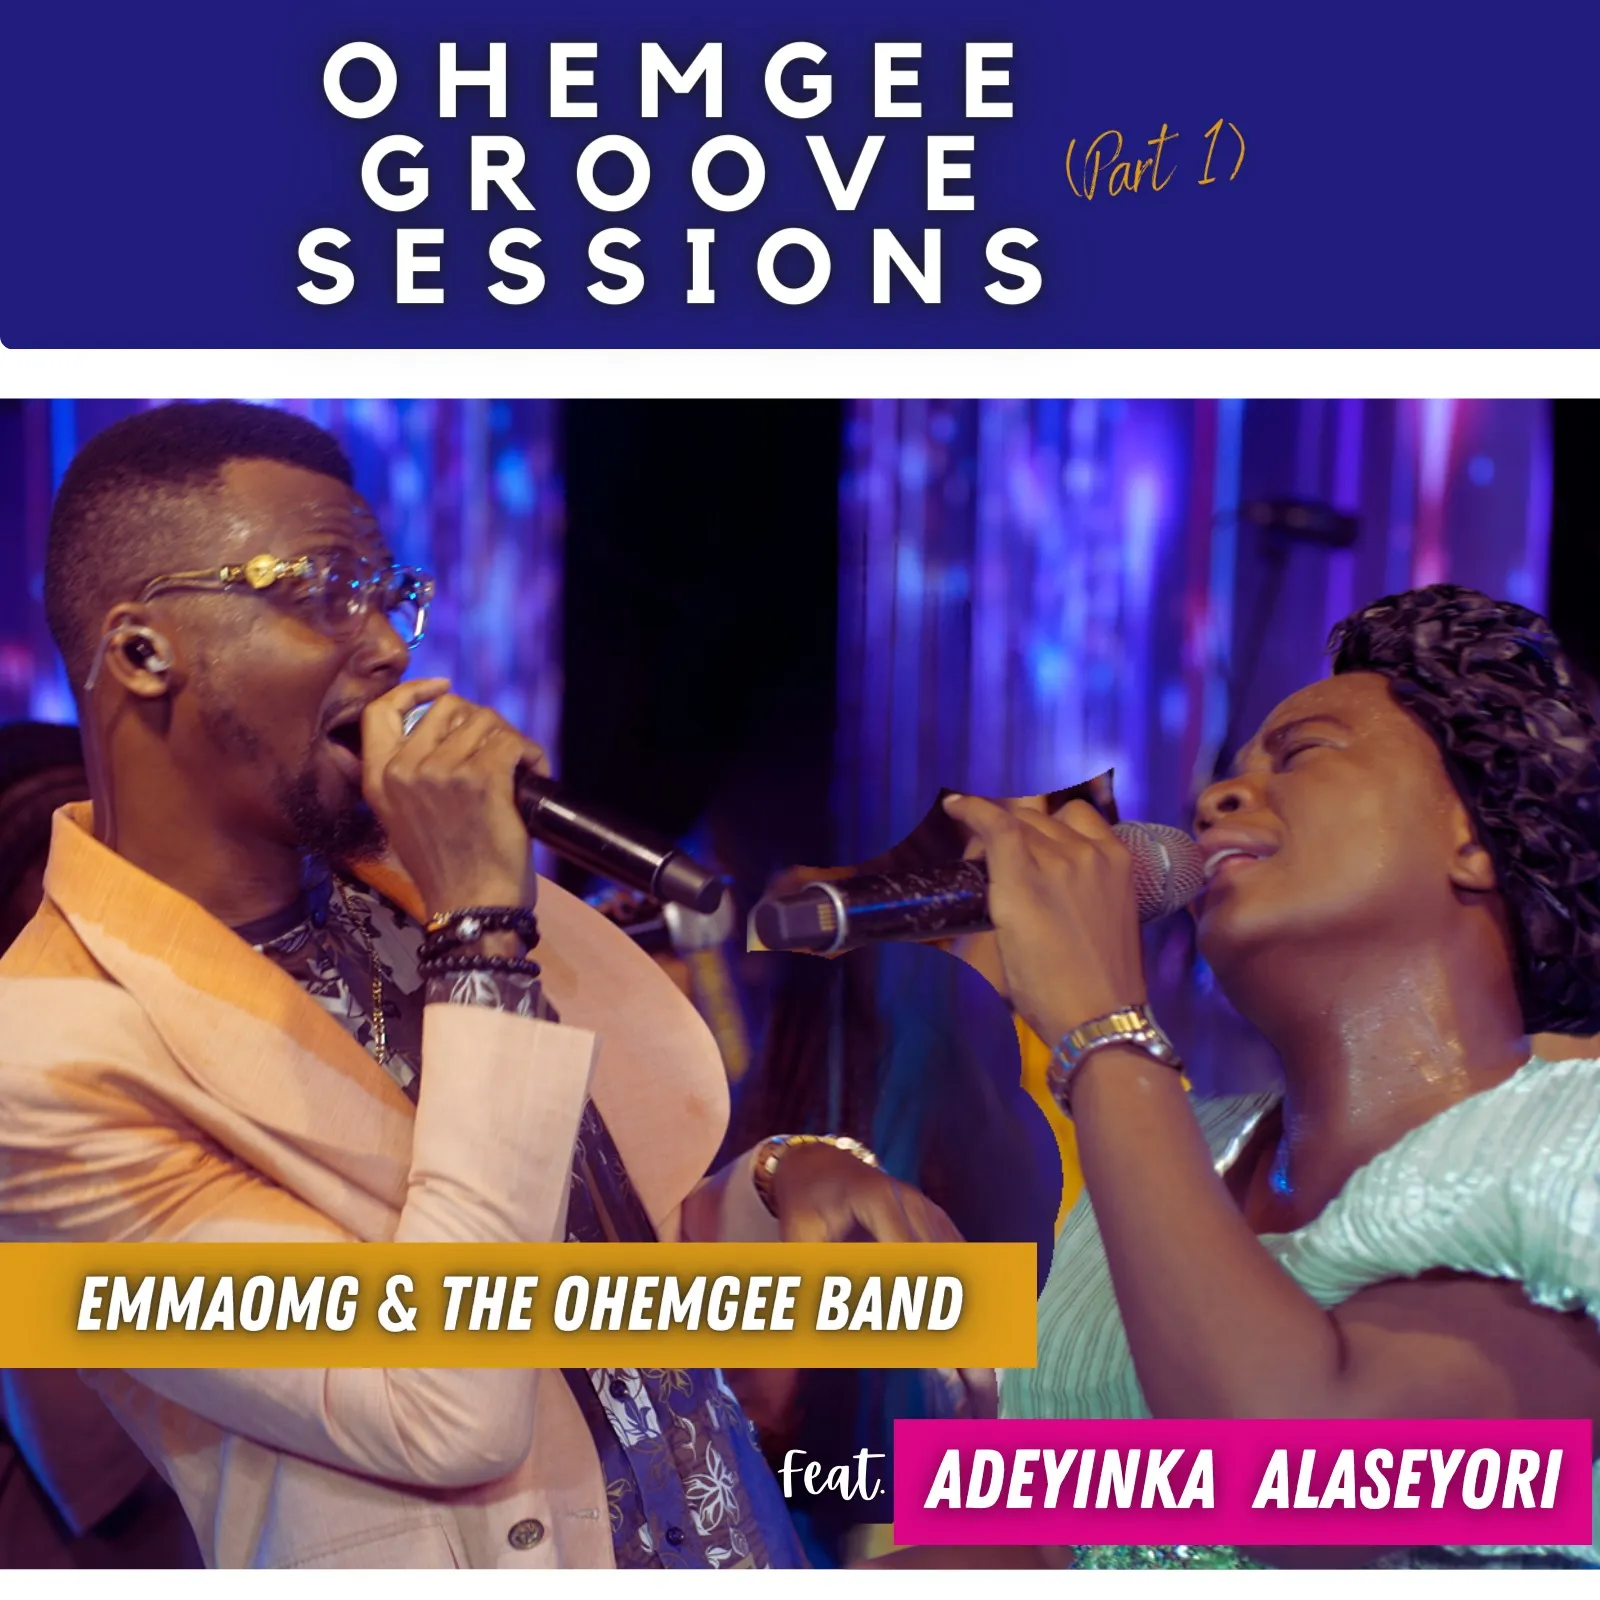 EmmaOMG & The OhEmGee Band ft. Adeyinka Alaseyori – OhEmGee Groove Sessions (Part 1)